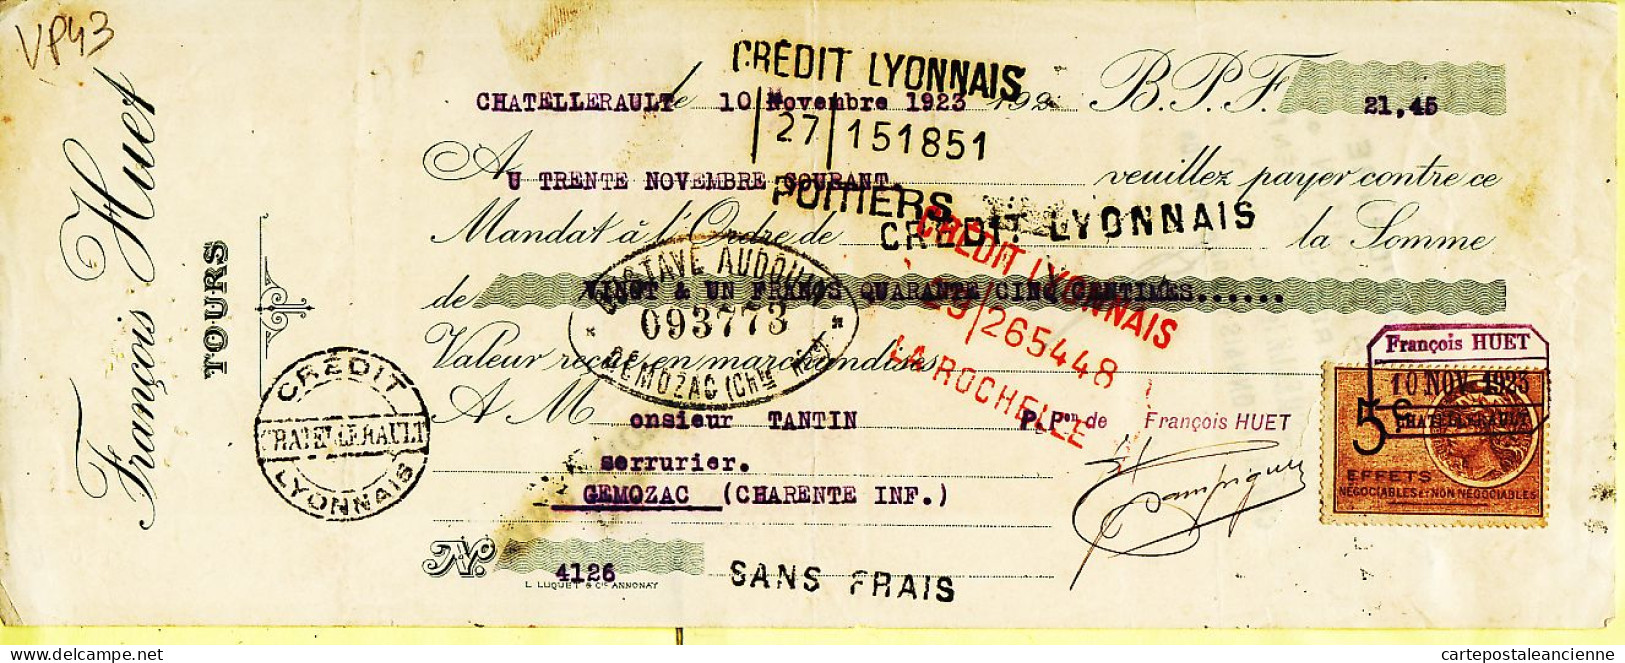 31263 / François HUET Tours Lettre De Change 10.11.1923 à TANTIN Serrurier Genozac Timbre Fiscal 5 Frcs - Wissels